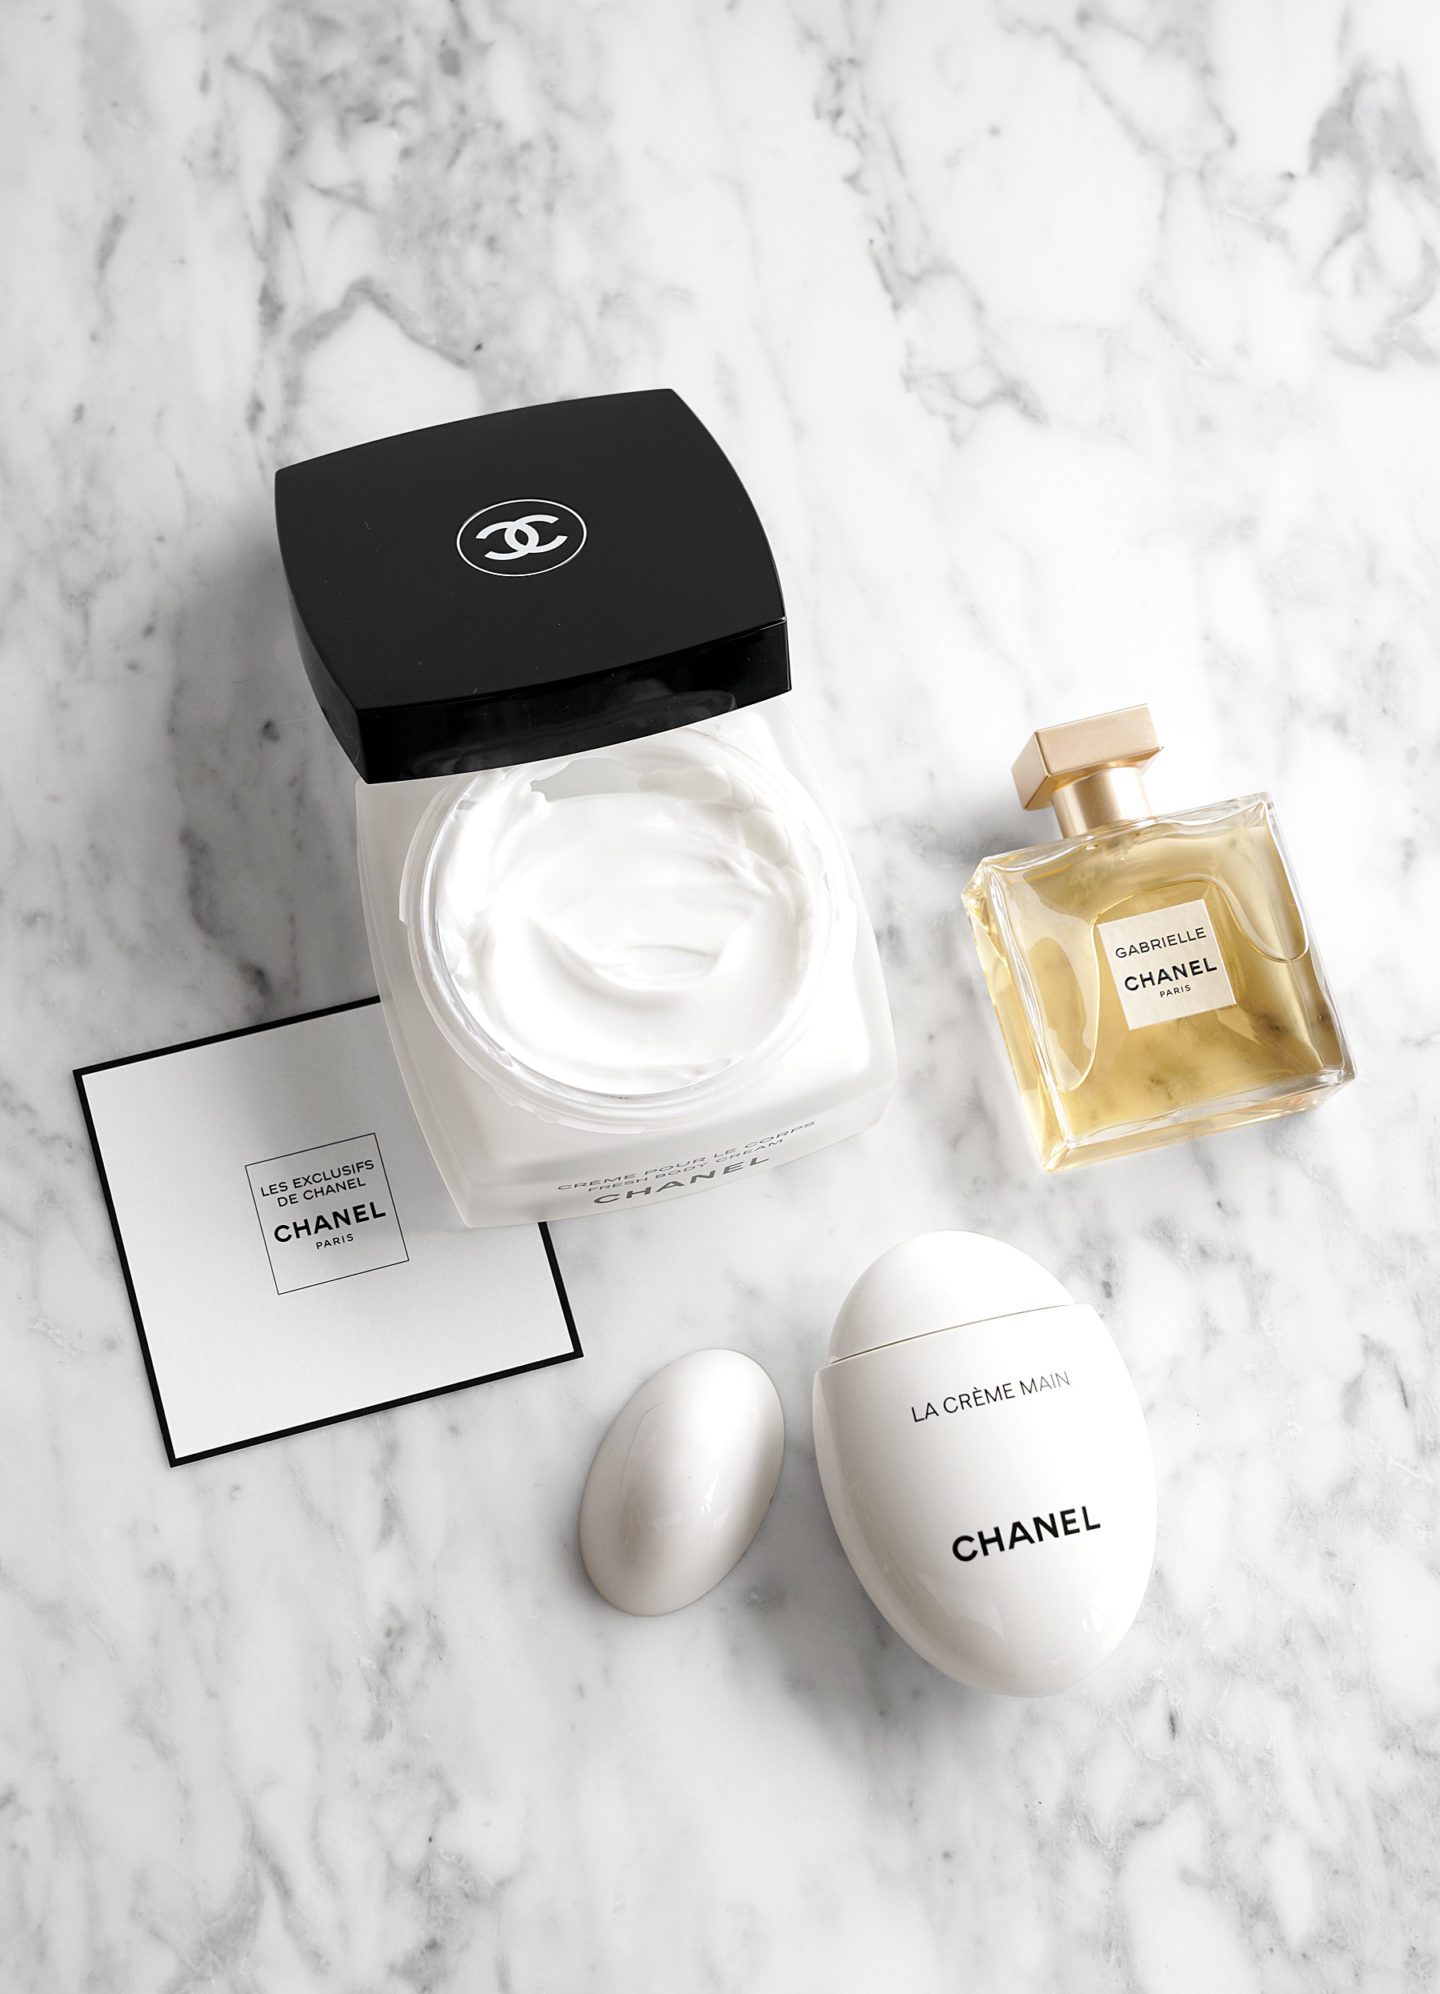 Chanel Gabrielle Perfume, La Creme Main, Les Exclusifs de Chanel